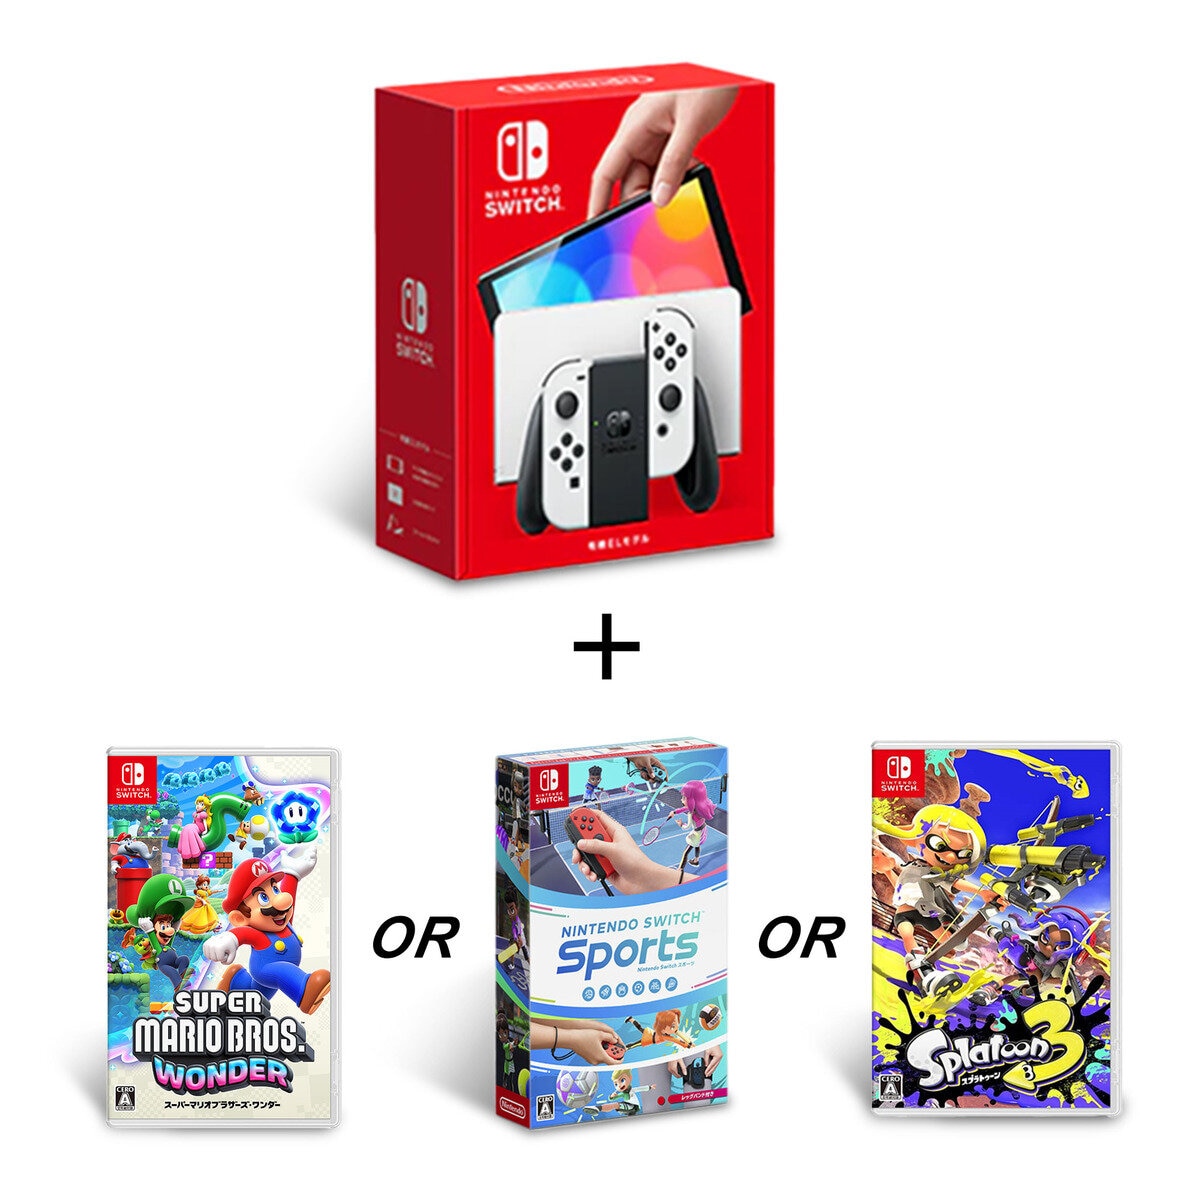 Nintendo Switch（有機ELモデル) + 選べるソフトセット | Costco Japan